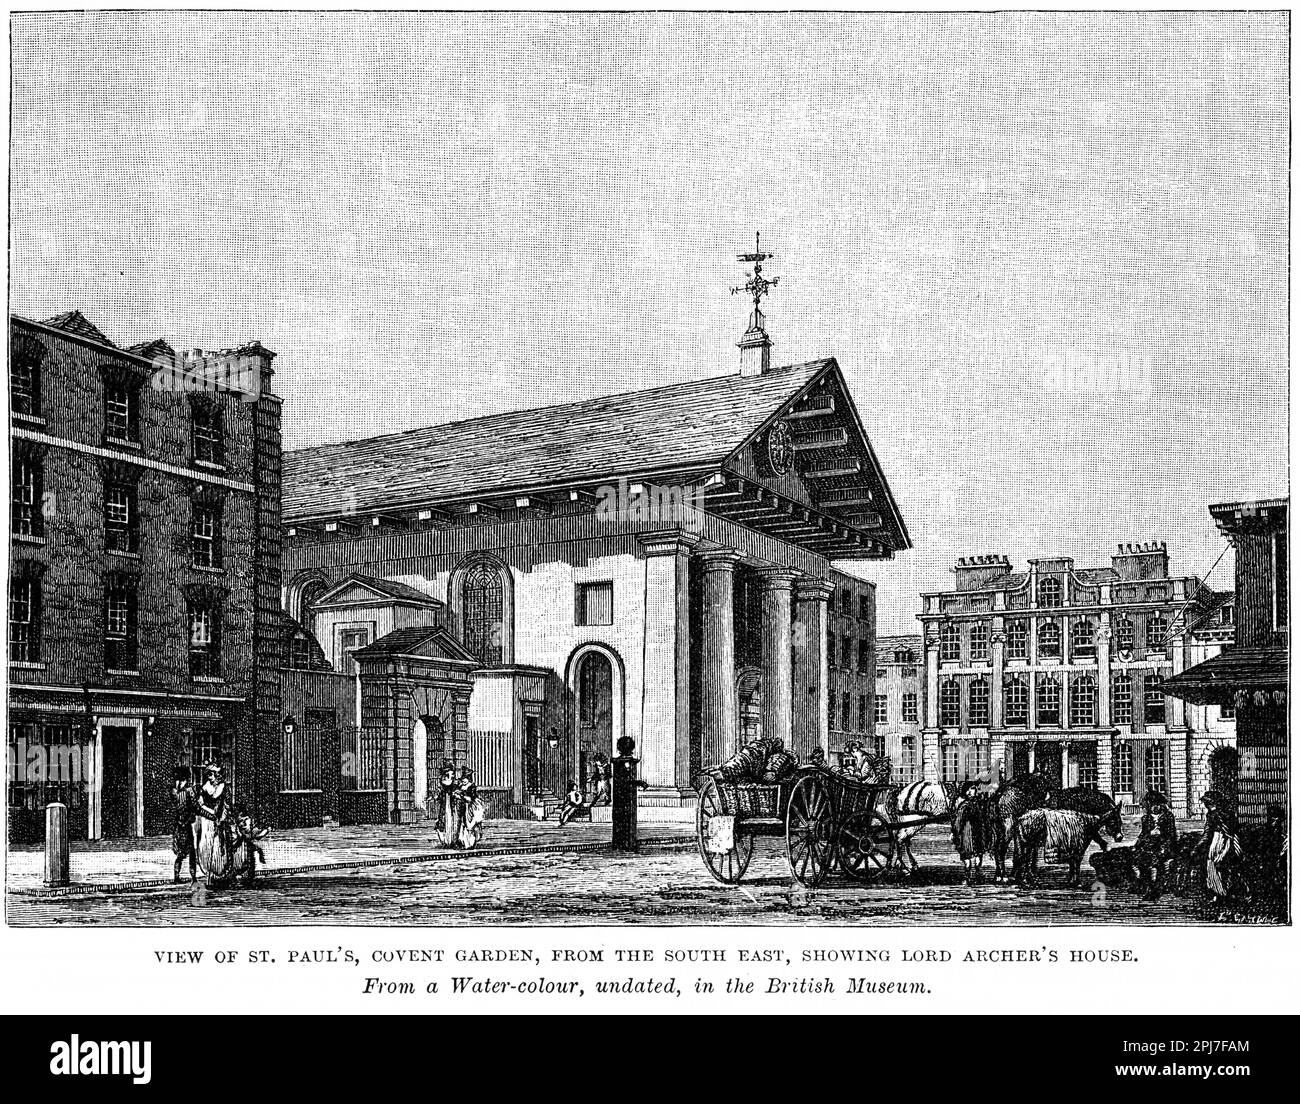 Incisione di St Paul's, Covent Garden, dal sud-est, che mostra la casa di Lord Archer, Londra, circa 1880 Foto Stock